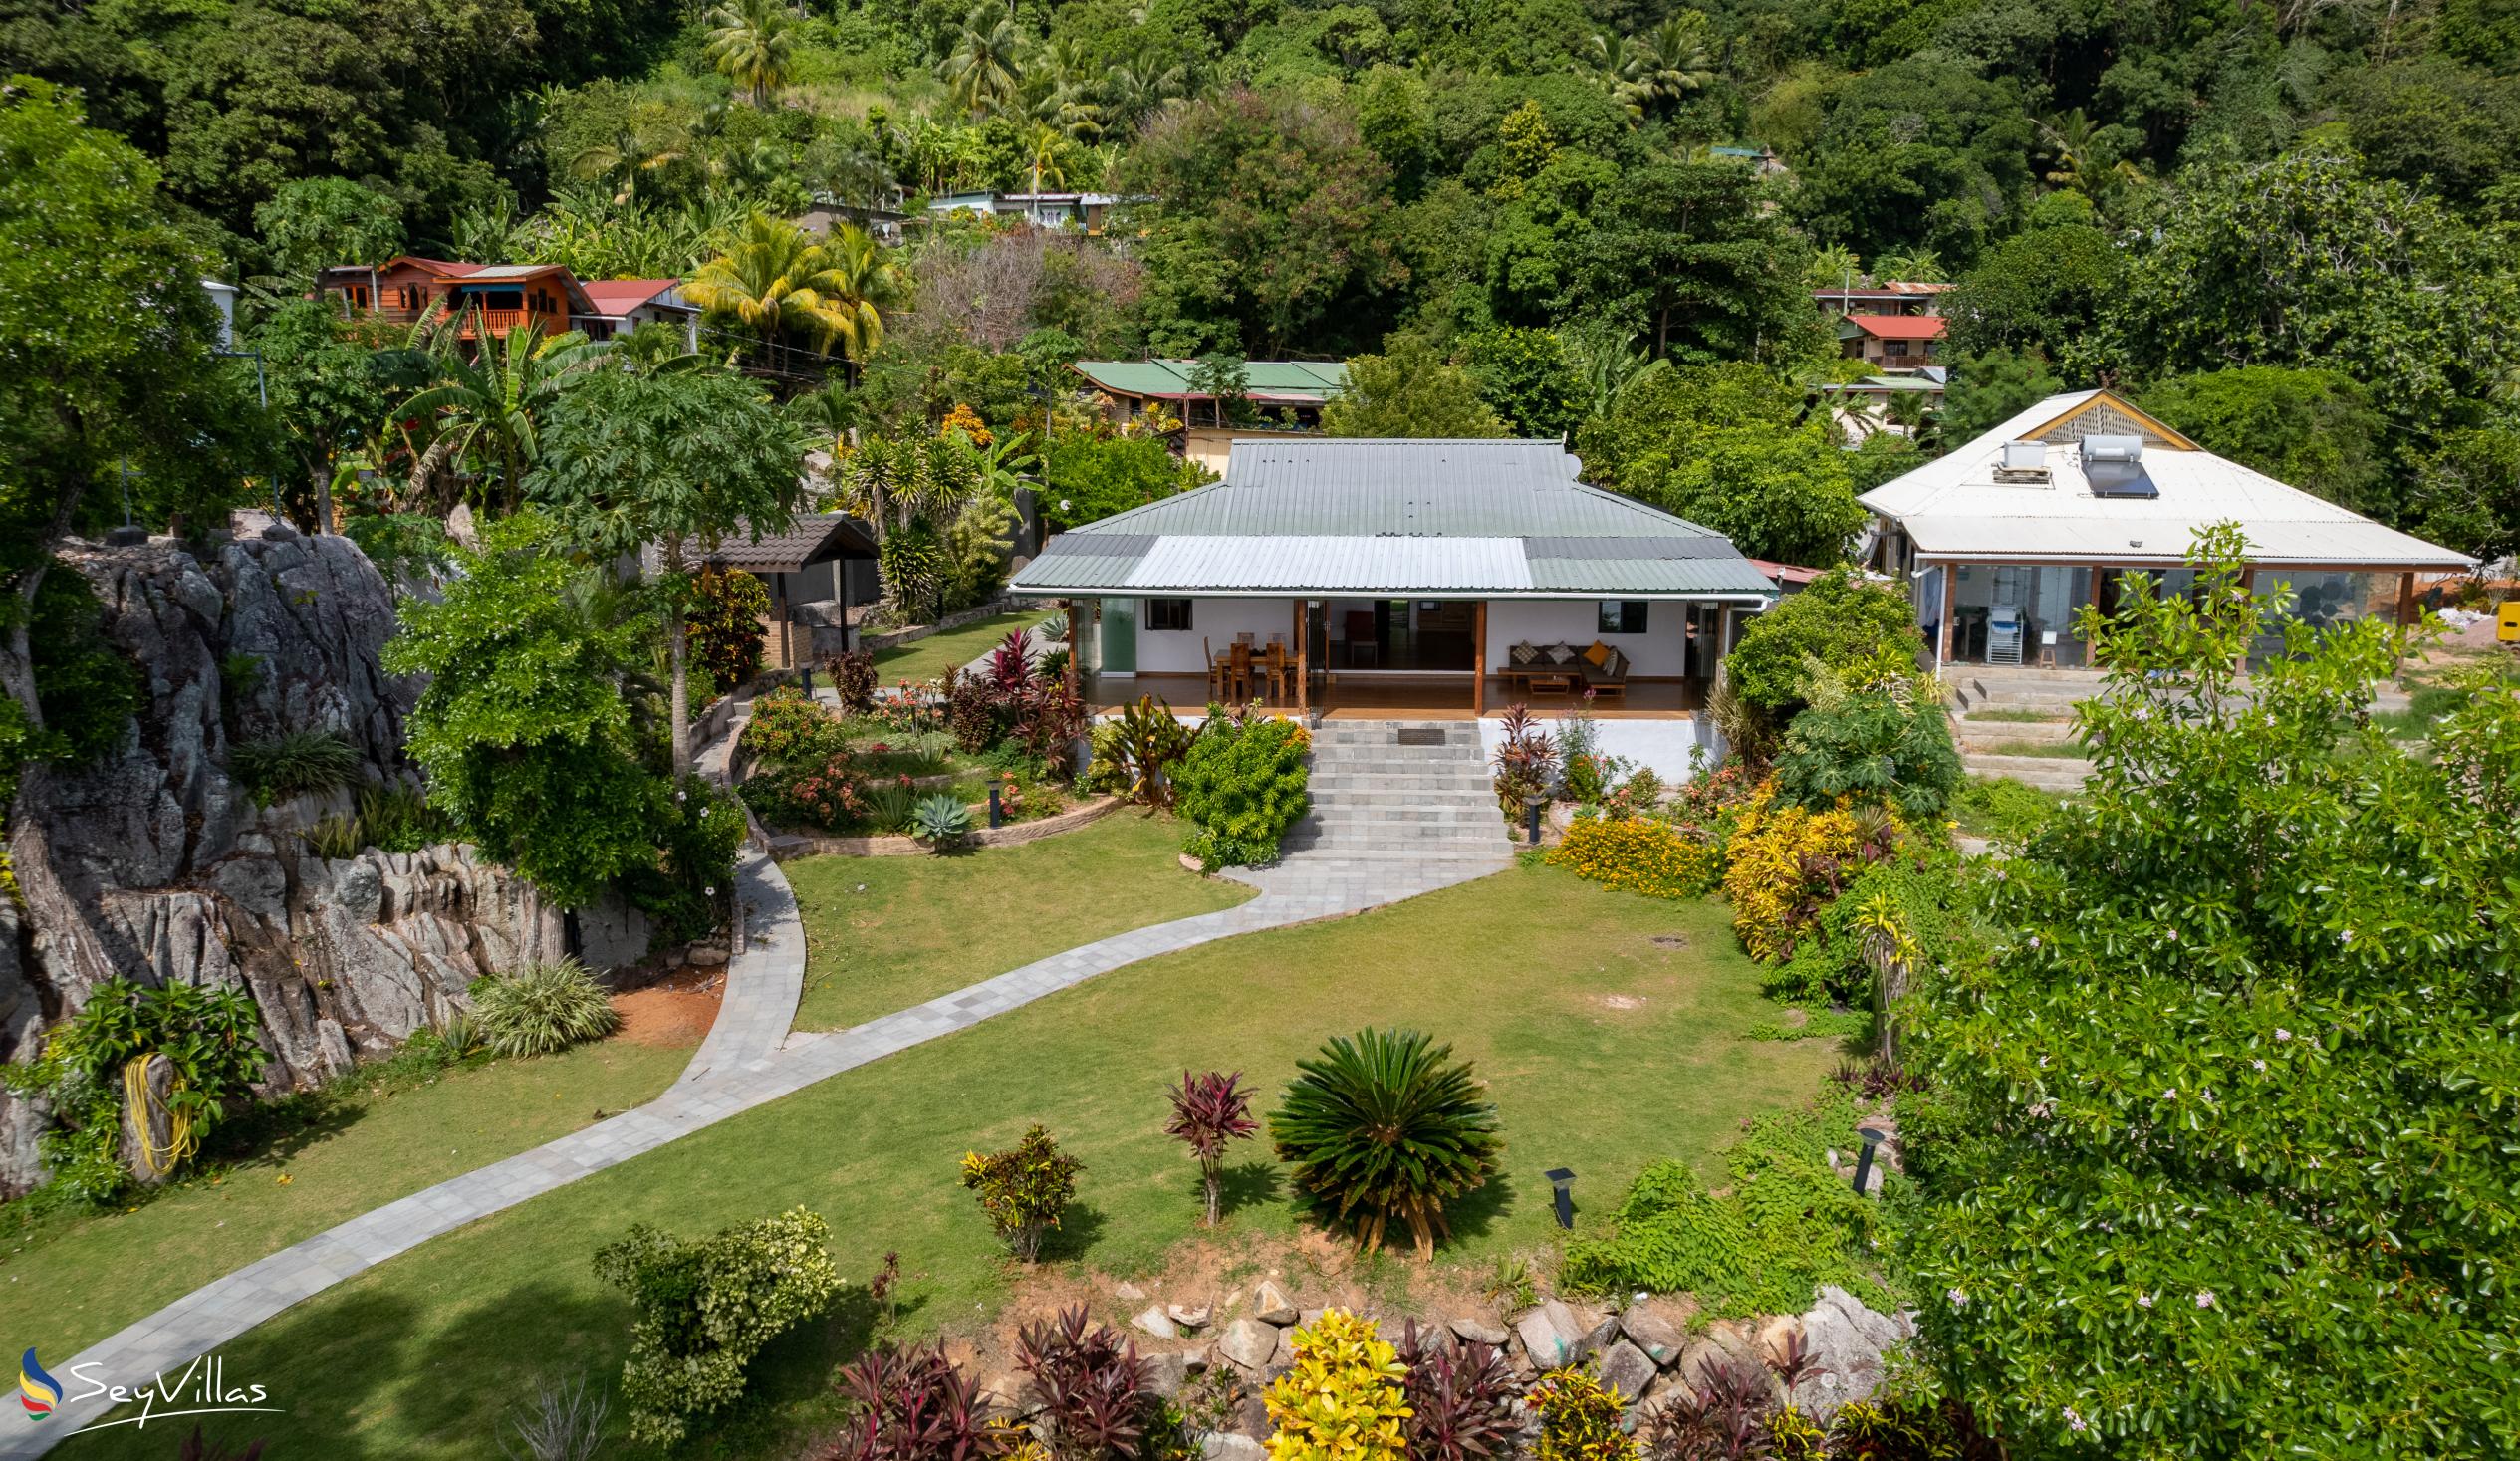 Foto 10: Cote Mer Villa - Aussenbereich - Praslin (Seychellen)